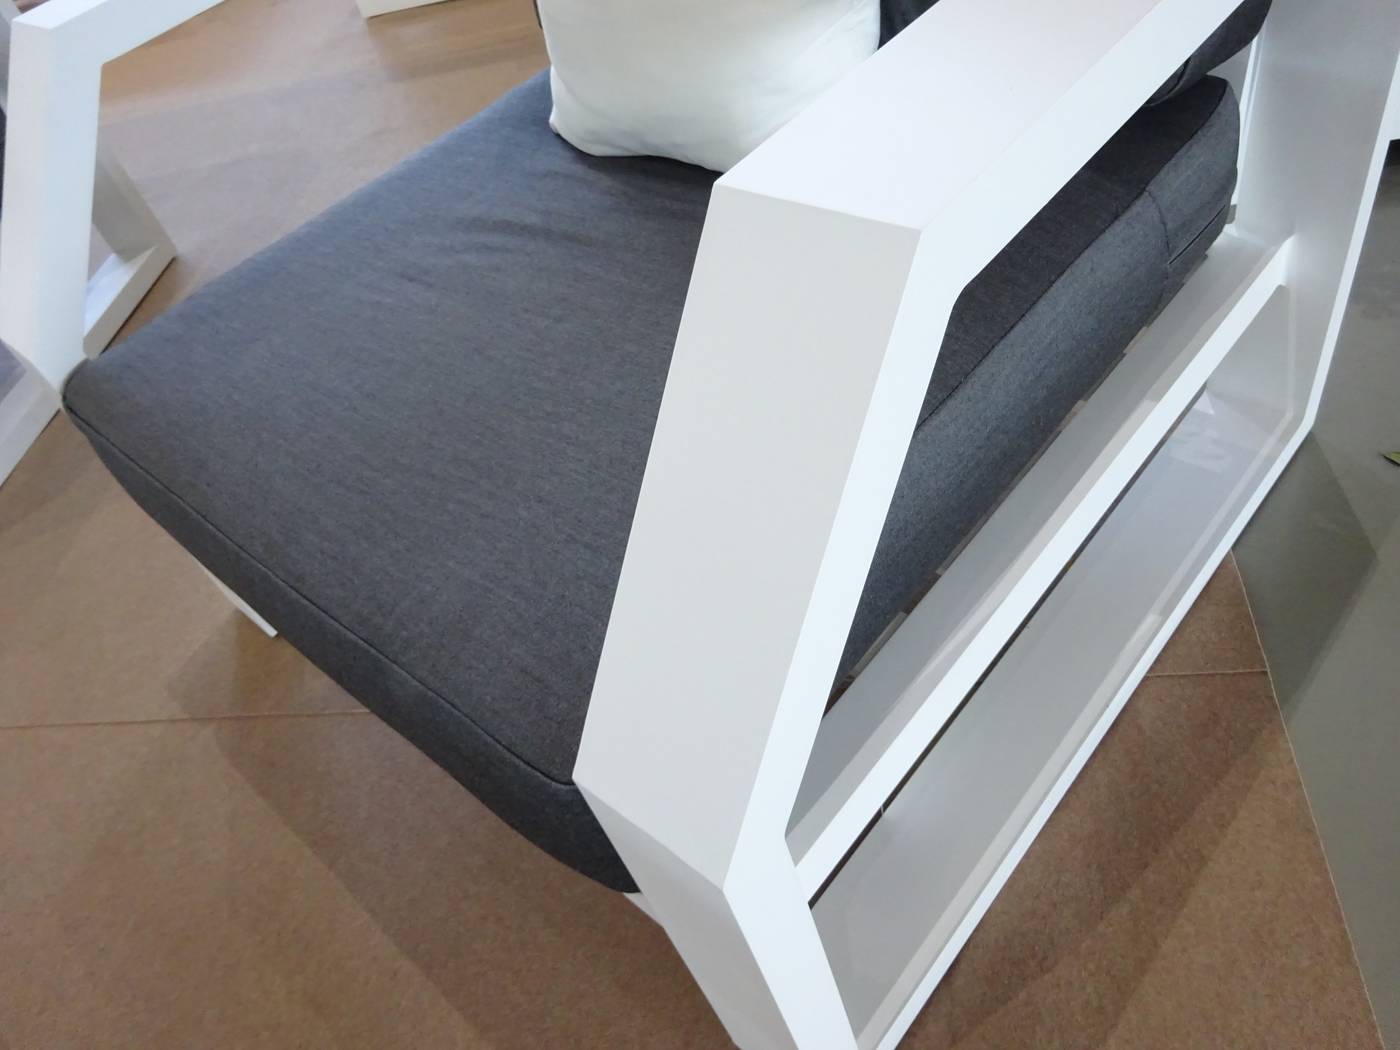 Set Aluminio Luxe Zafiro-8 - Conjunto lujo de aluminio: 1 sofá de 3 plazas + 2 sillones + 1 mesa de centro + cojines.<br/><br/><b>OFERTA VÁLIDA HASTA FIN DE EXISTENCIAS</b> aplicable sólo al Color Estructura: Blanco, con Tapizado: Dralón.<br/><b>PLAZO ENTREGA: 2 a 4 semanas</b> con dichas opciones.